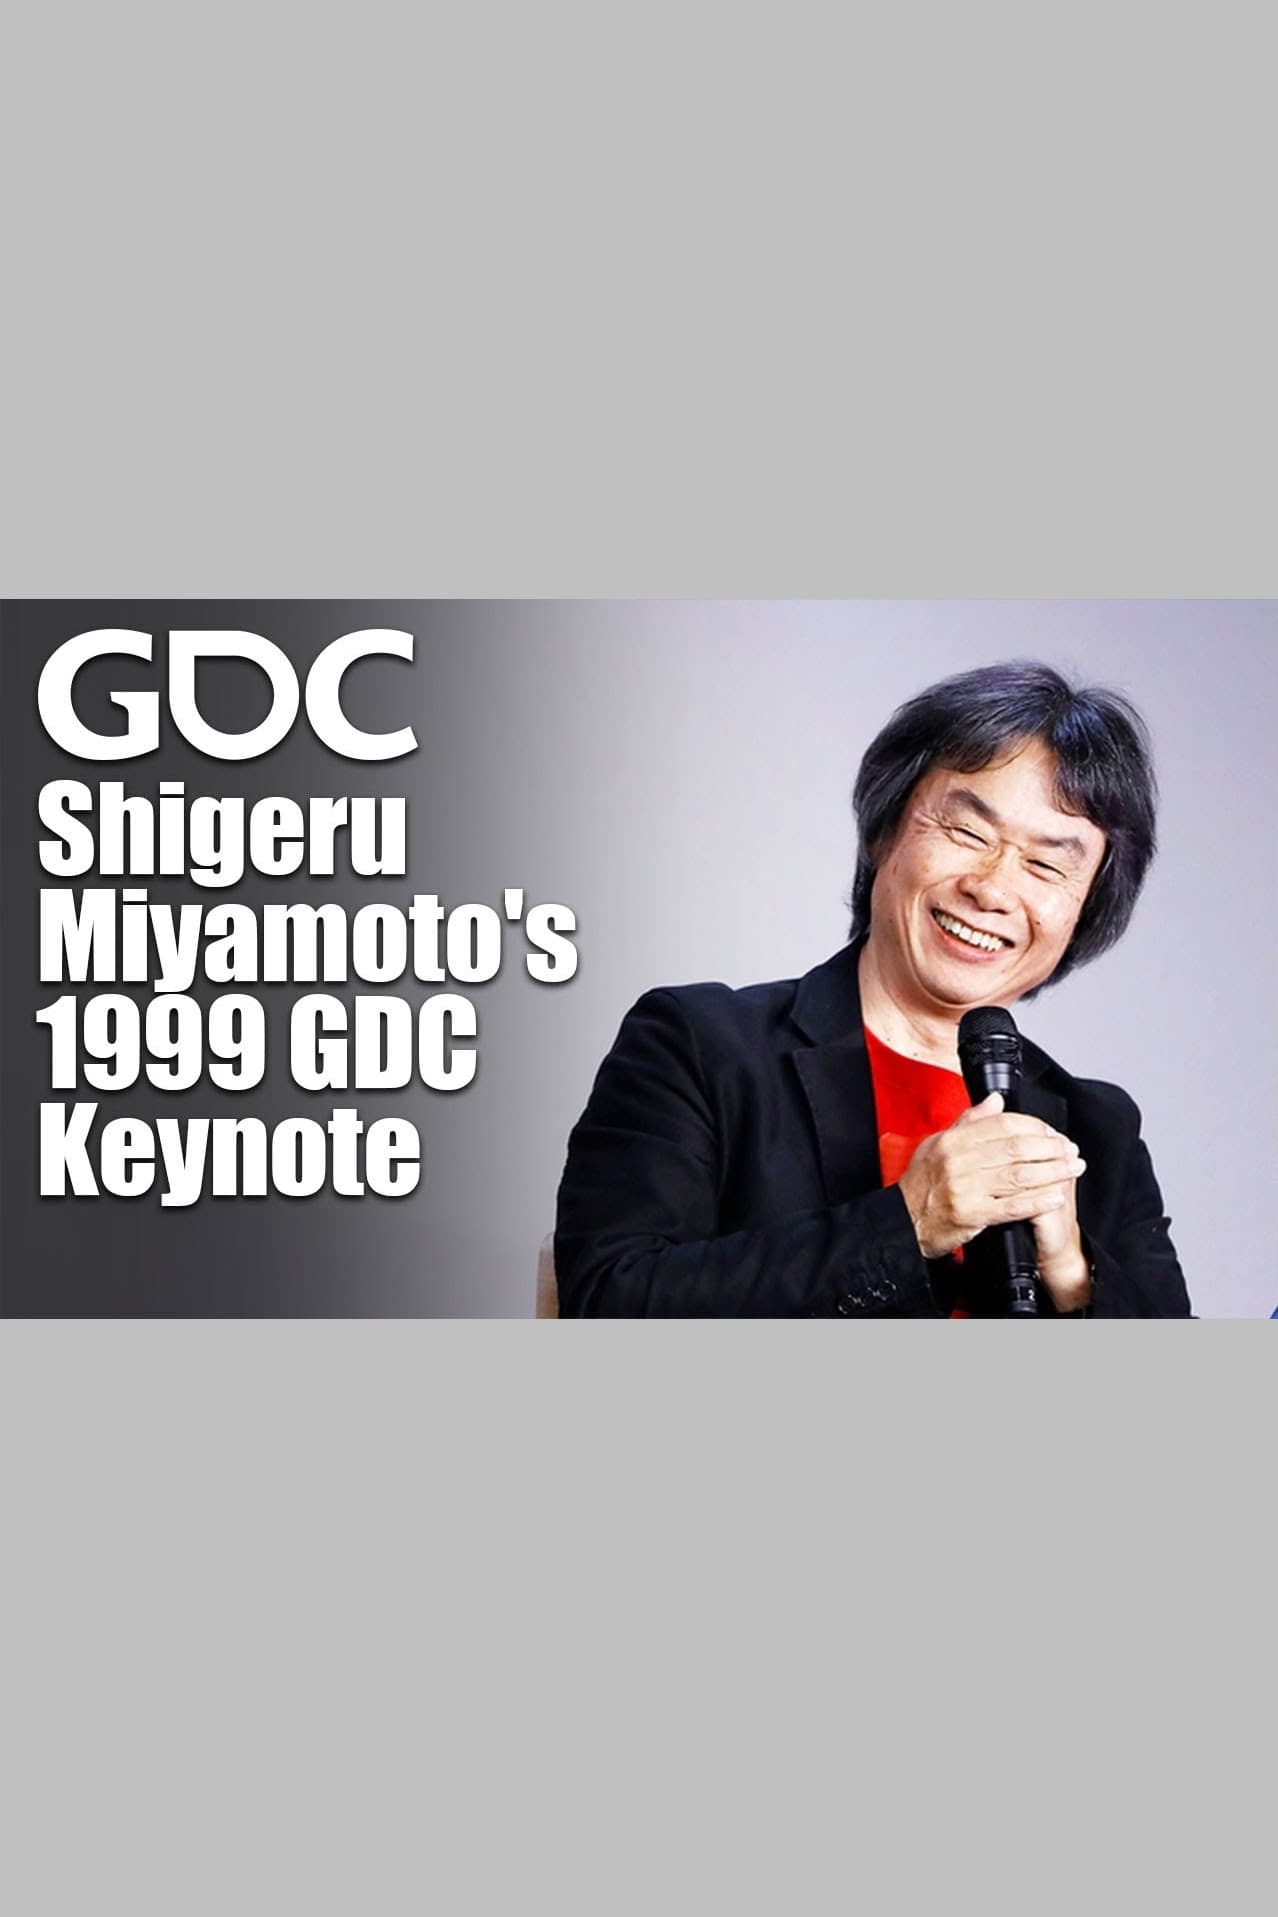 Shigeru Miyamoto's 1999 GDC Keynote